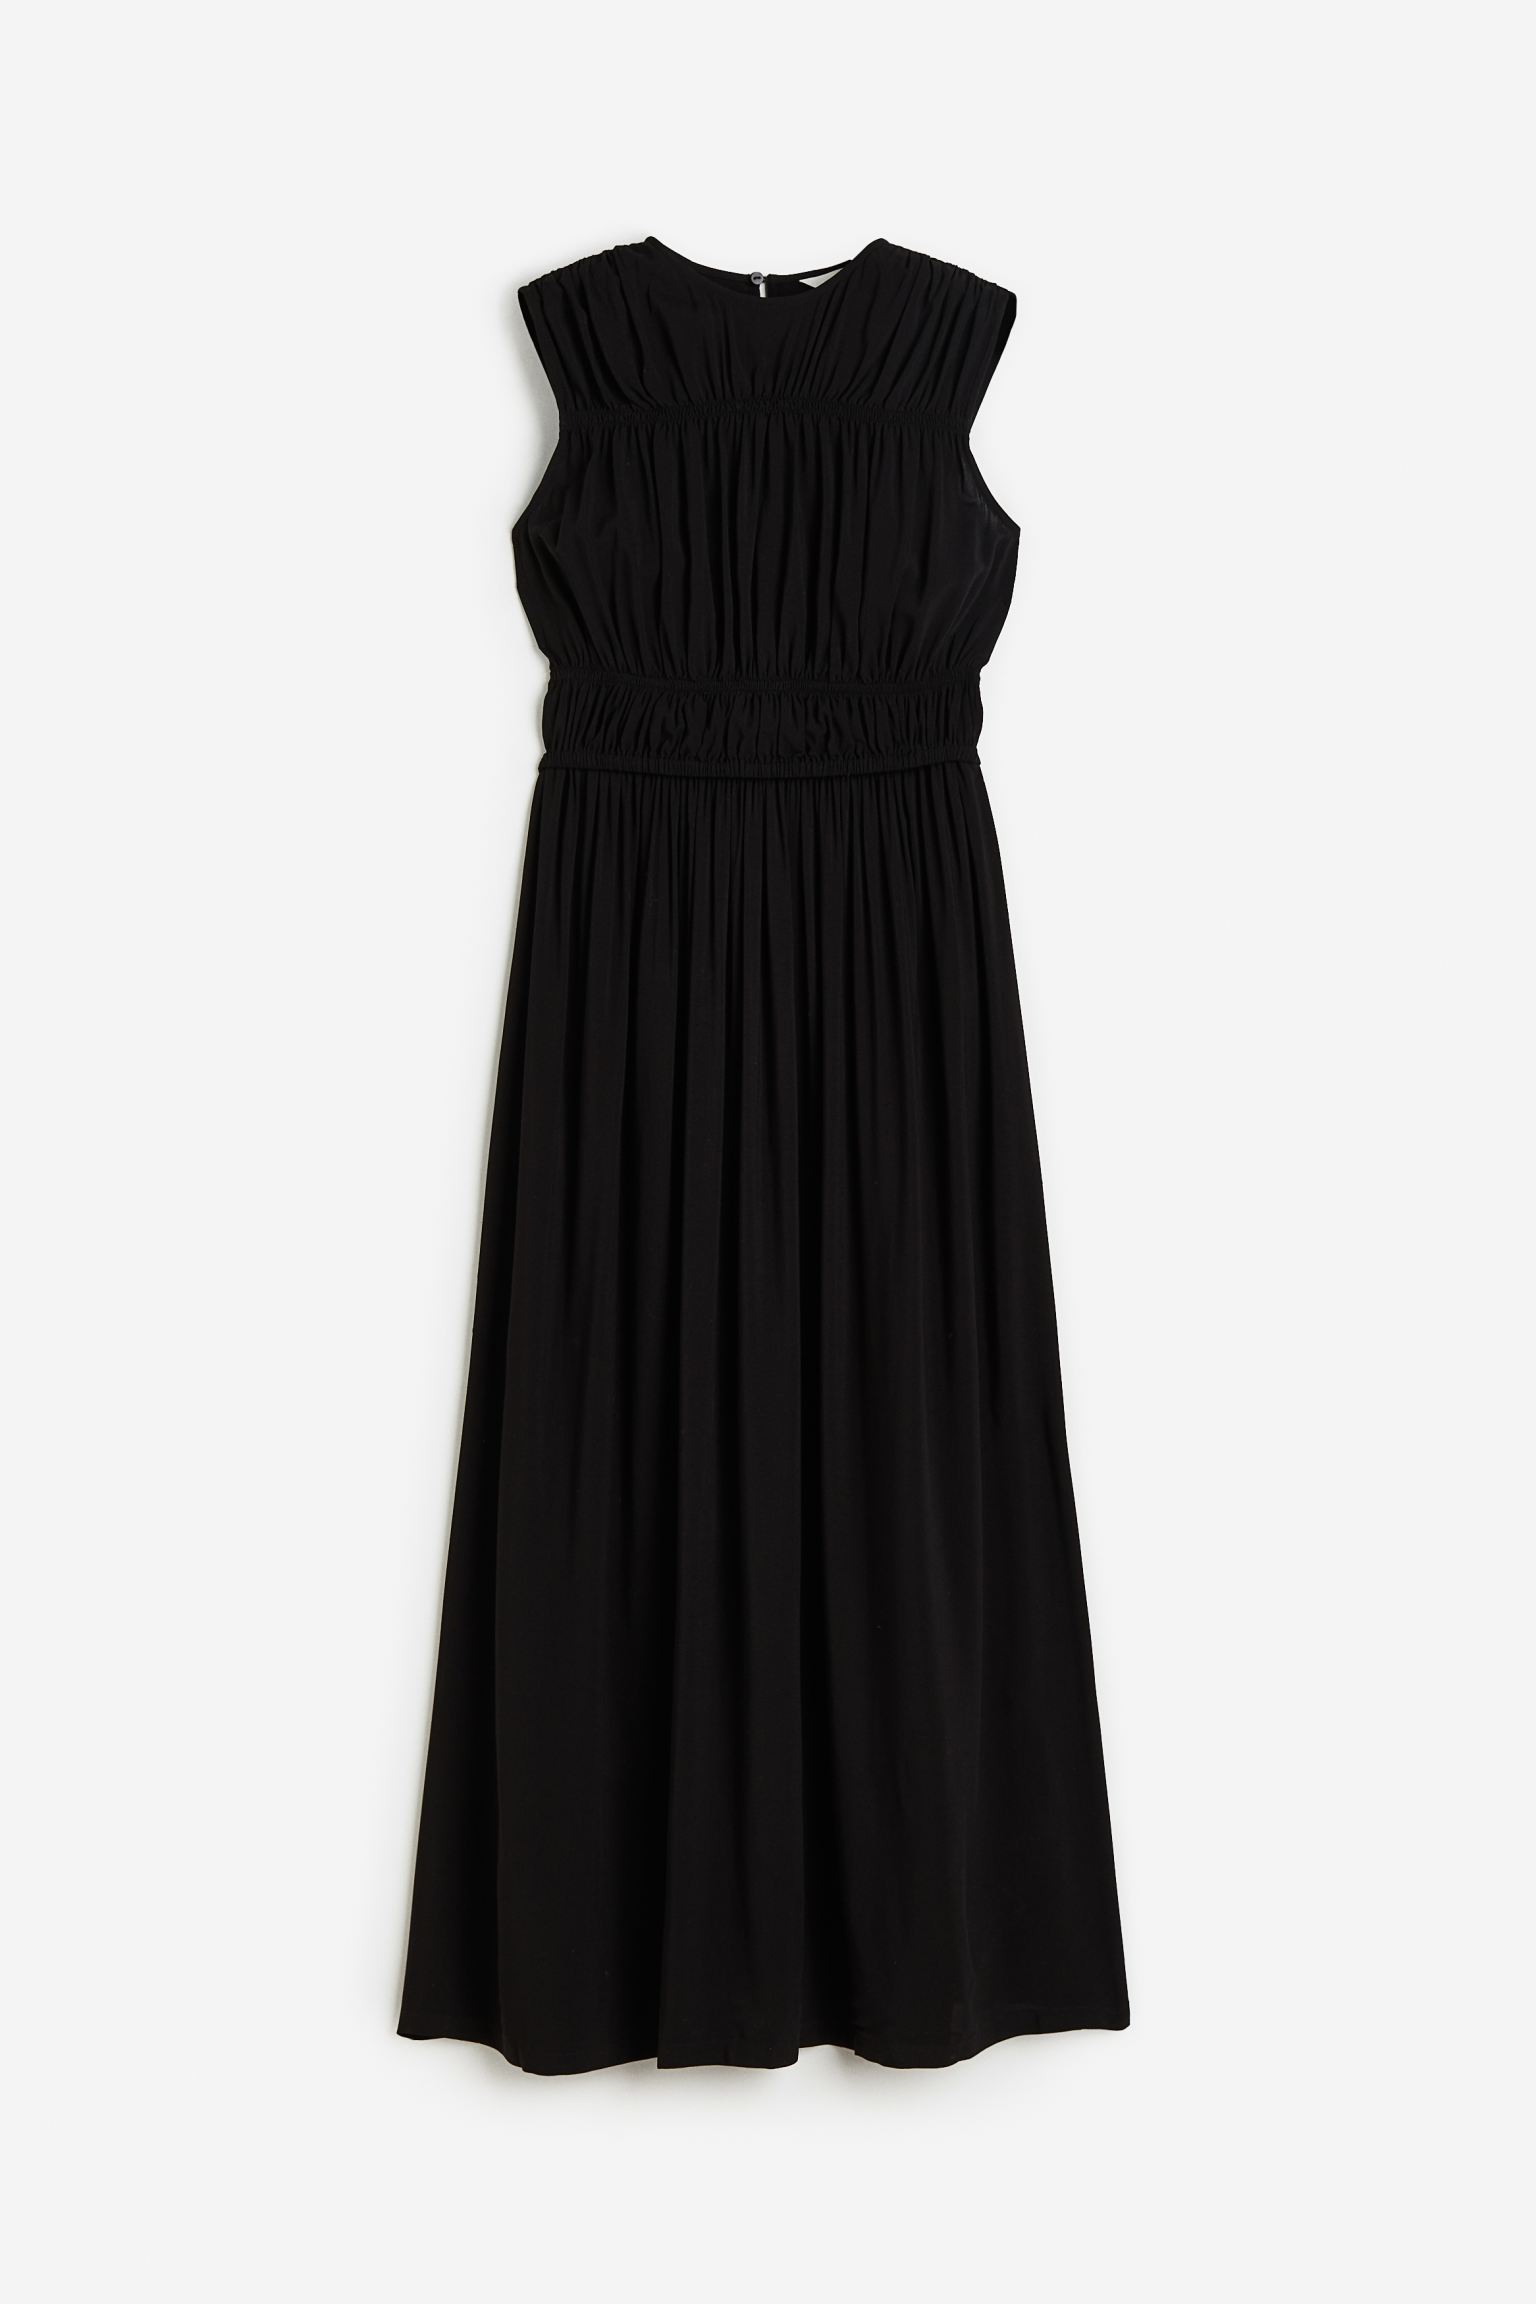 Платье женское H&M 1115916002 черное S (доставка из-за рубежа)